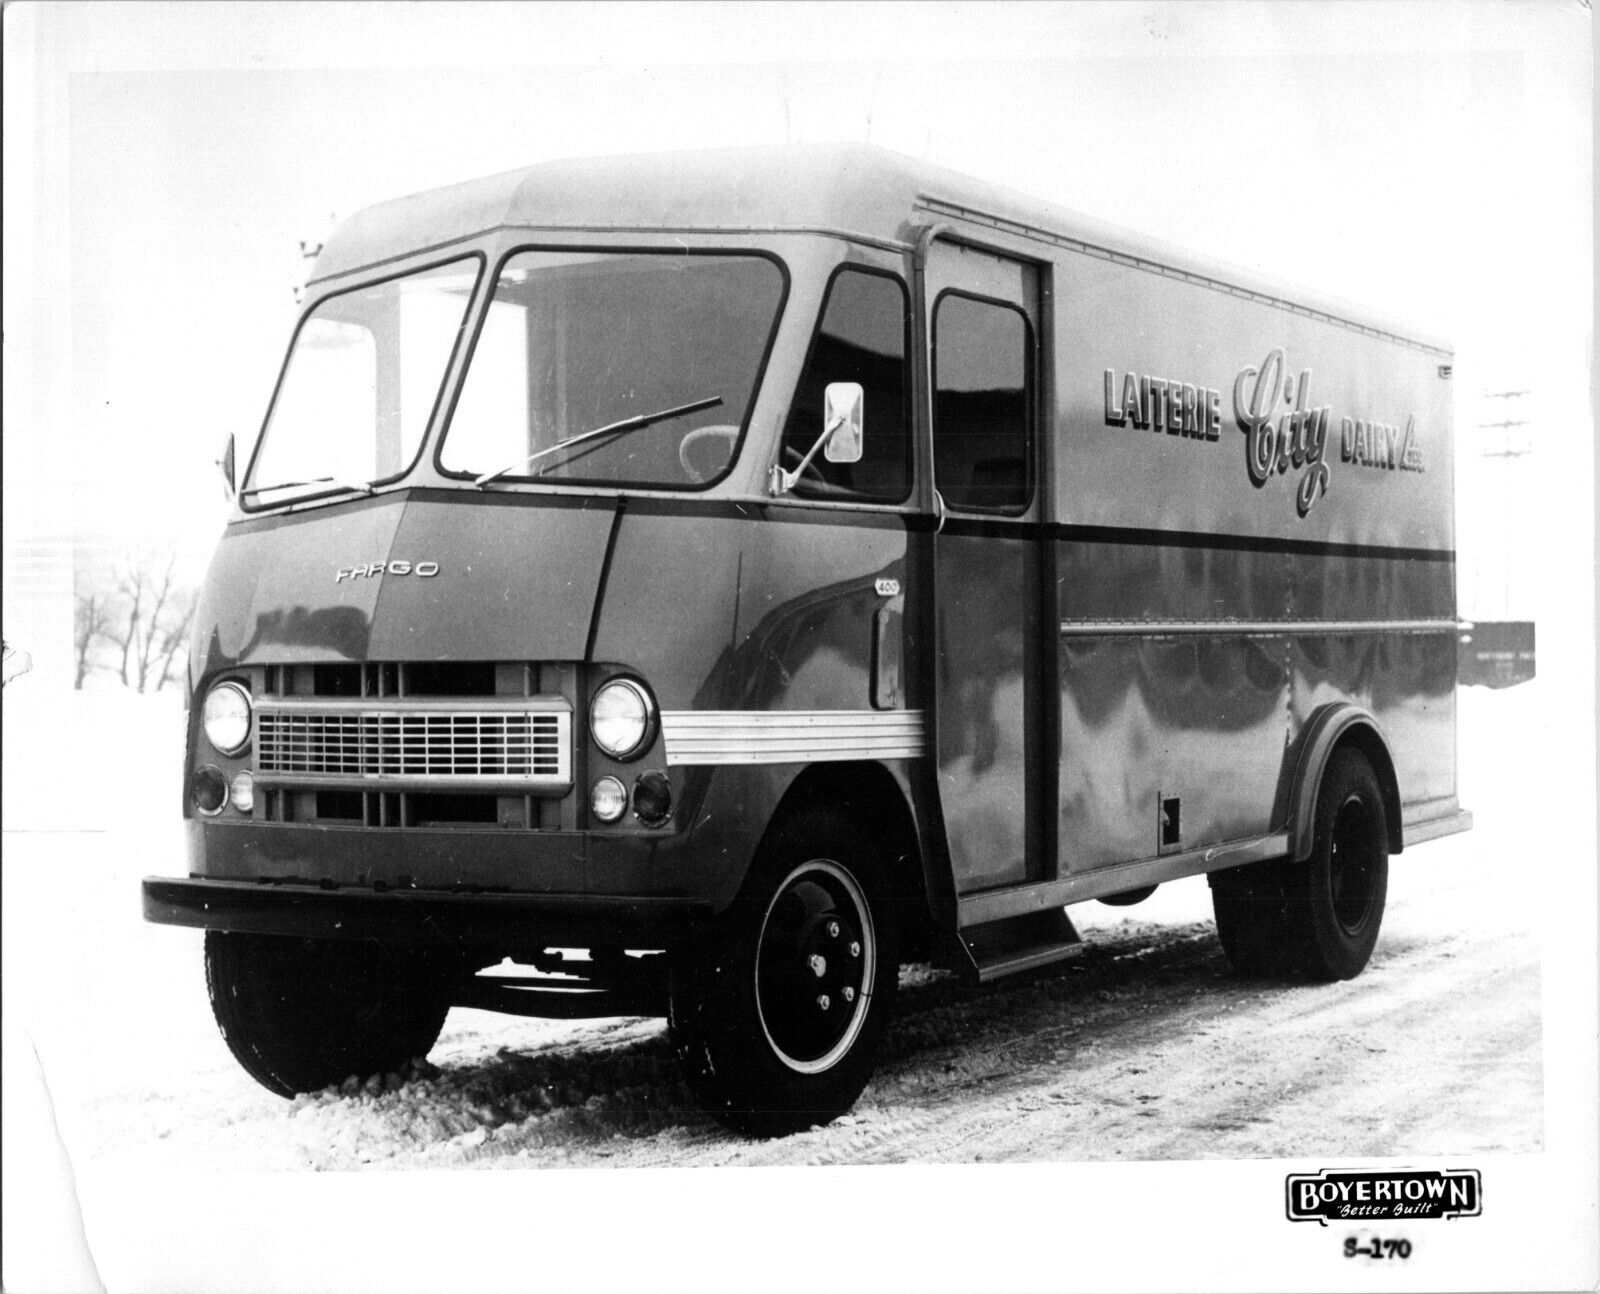 Vintage Fargo panel truck Laiterie City Dairy 8x10 B&W Photo Boyertown Trucks